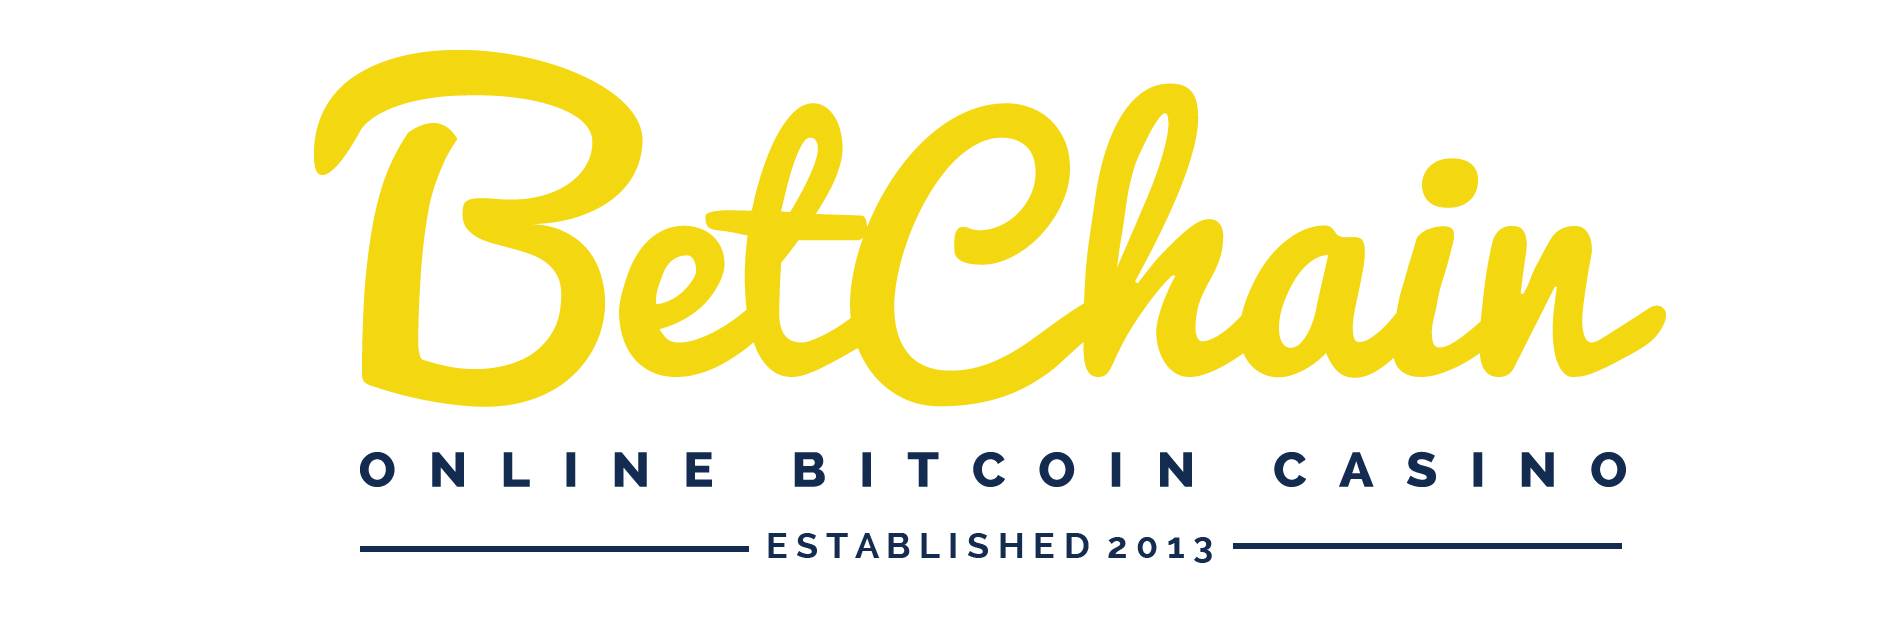 BetChain est une destination populaire de jeu de Bitcoin et de pièces de rechange
